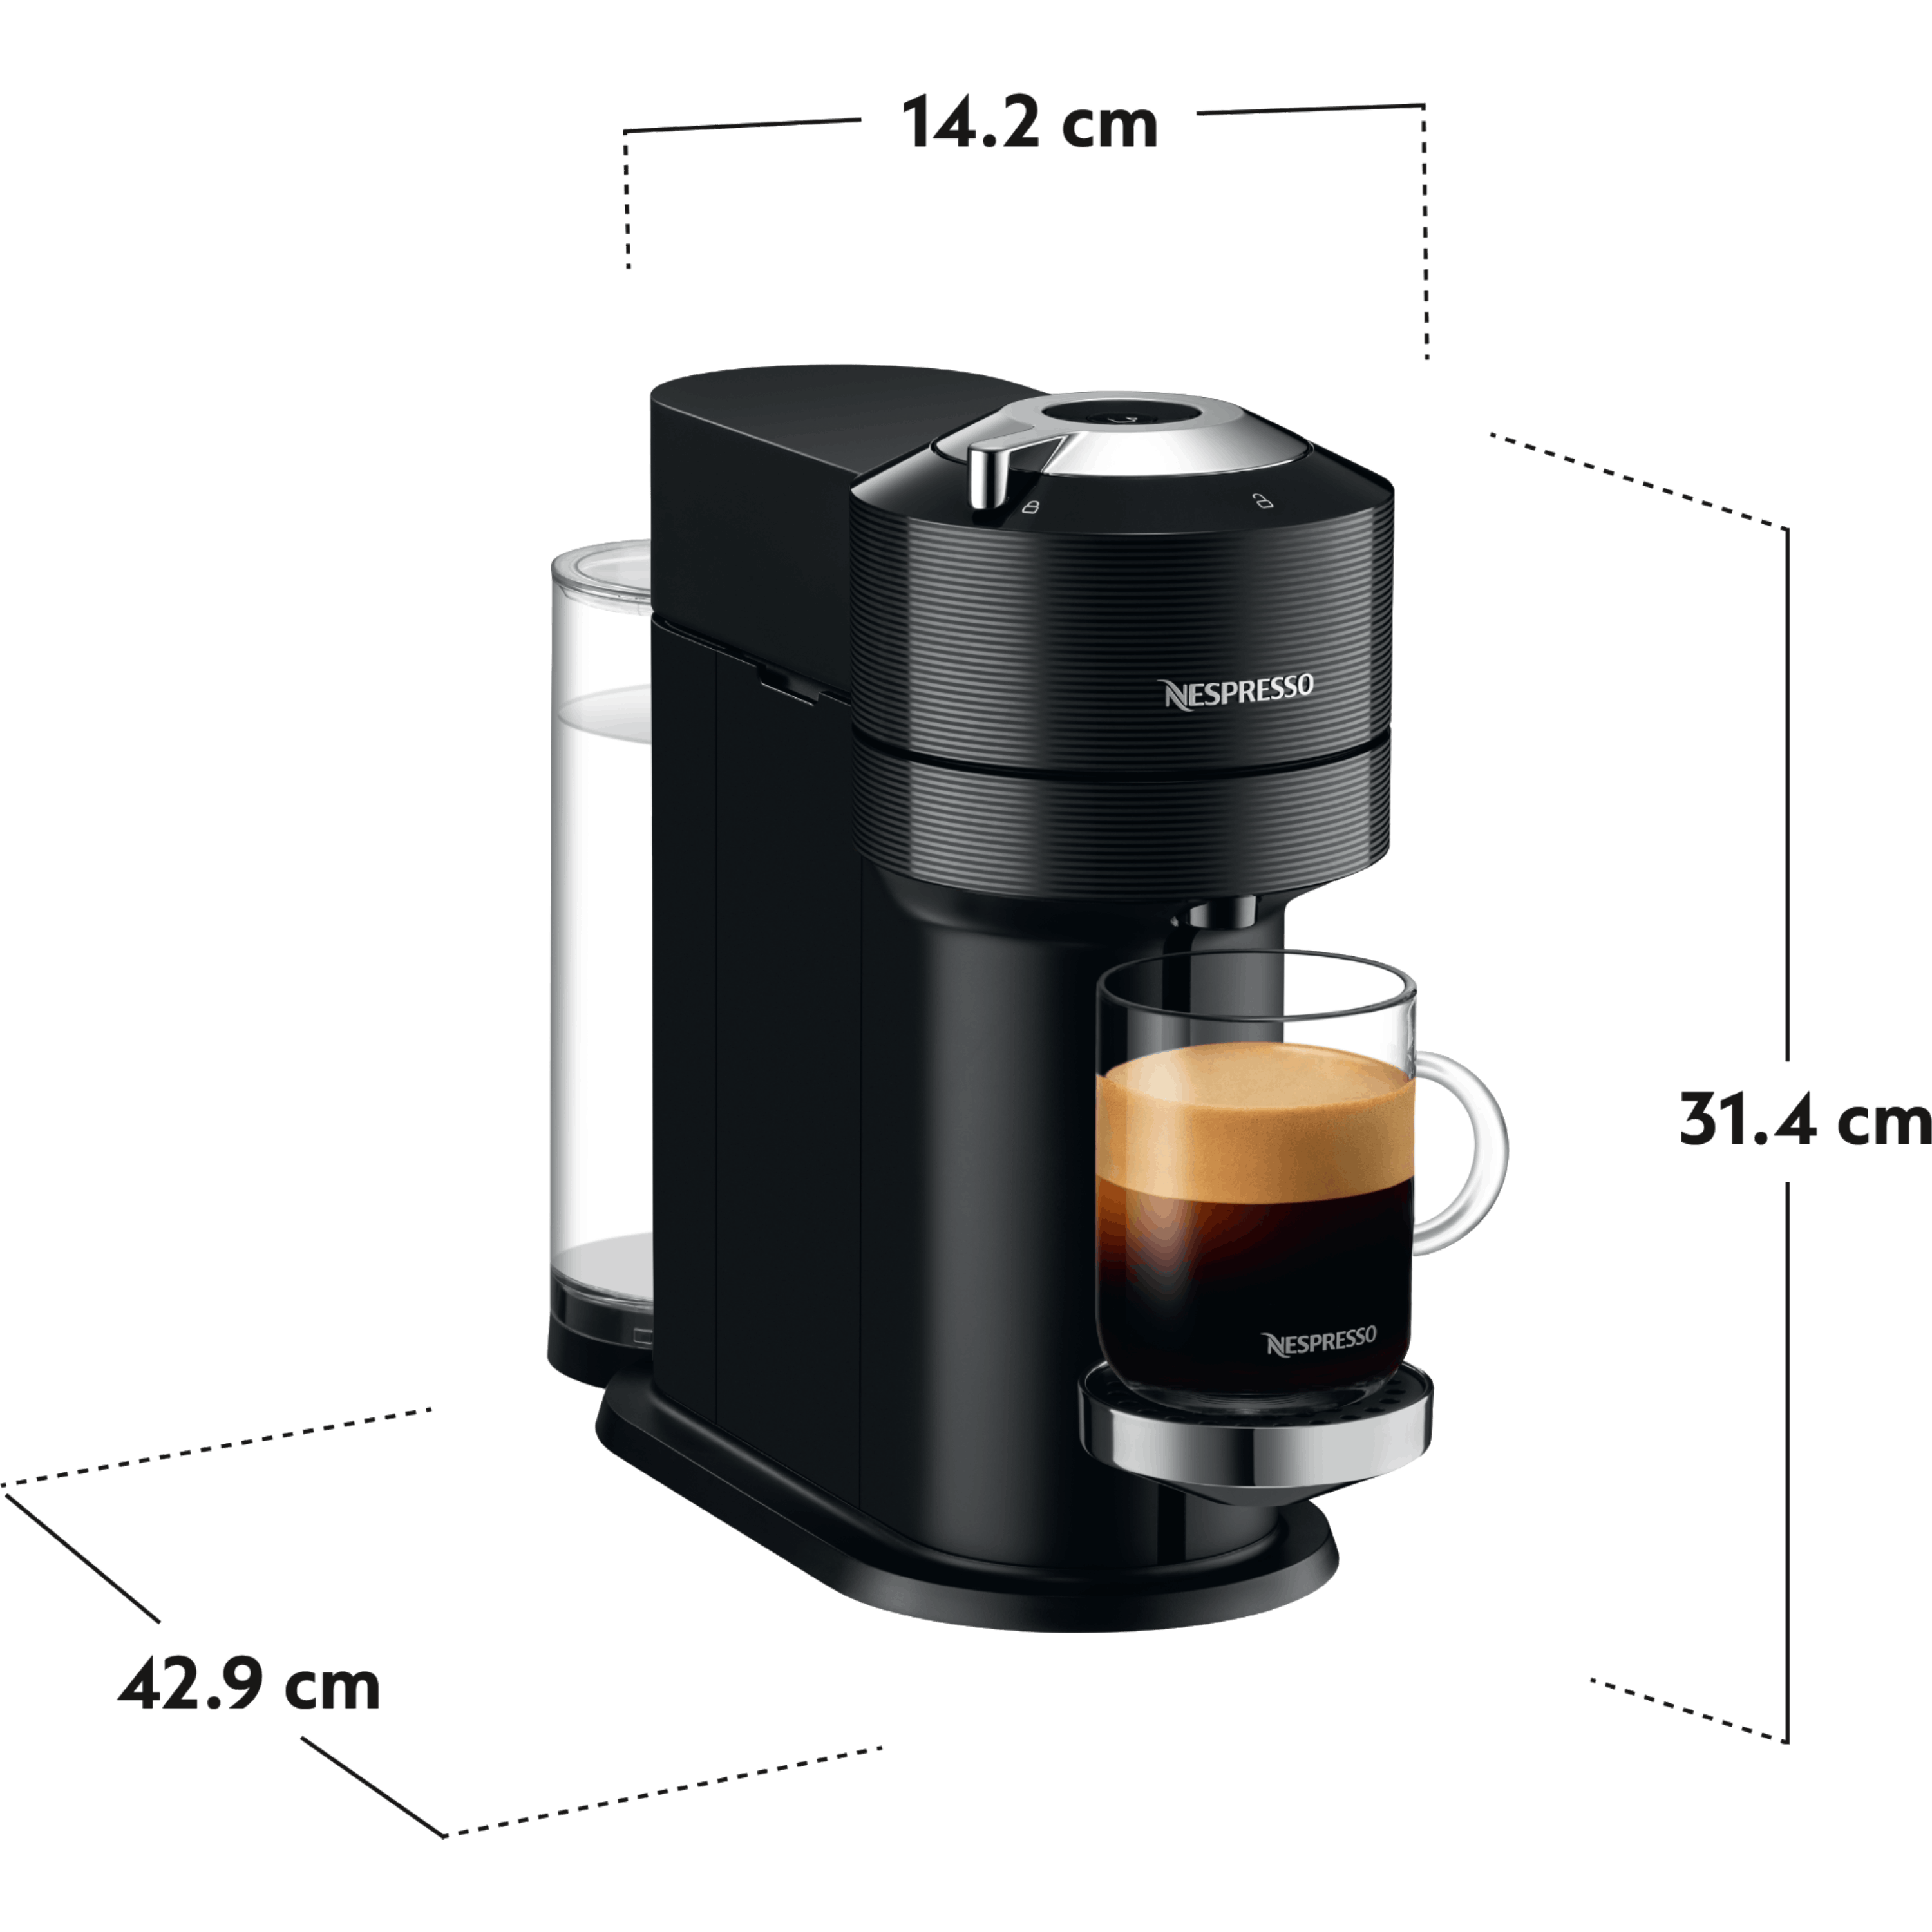 ماكينة قهوة VertuoNext  NESPRESSO موديل GCV1 בلون أسود - مع מקציף ו – 20 קפסולות  קפה במתנה